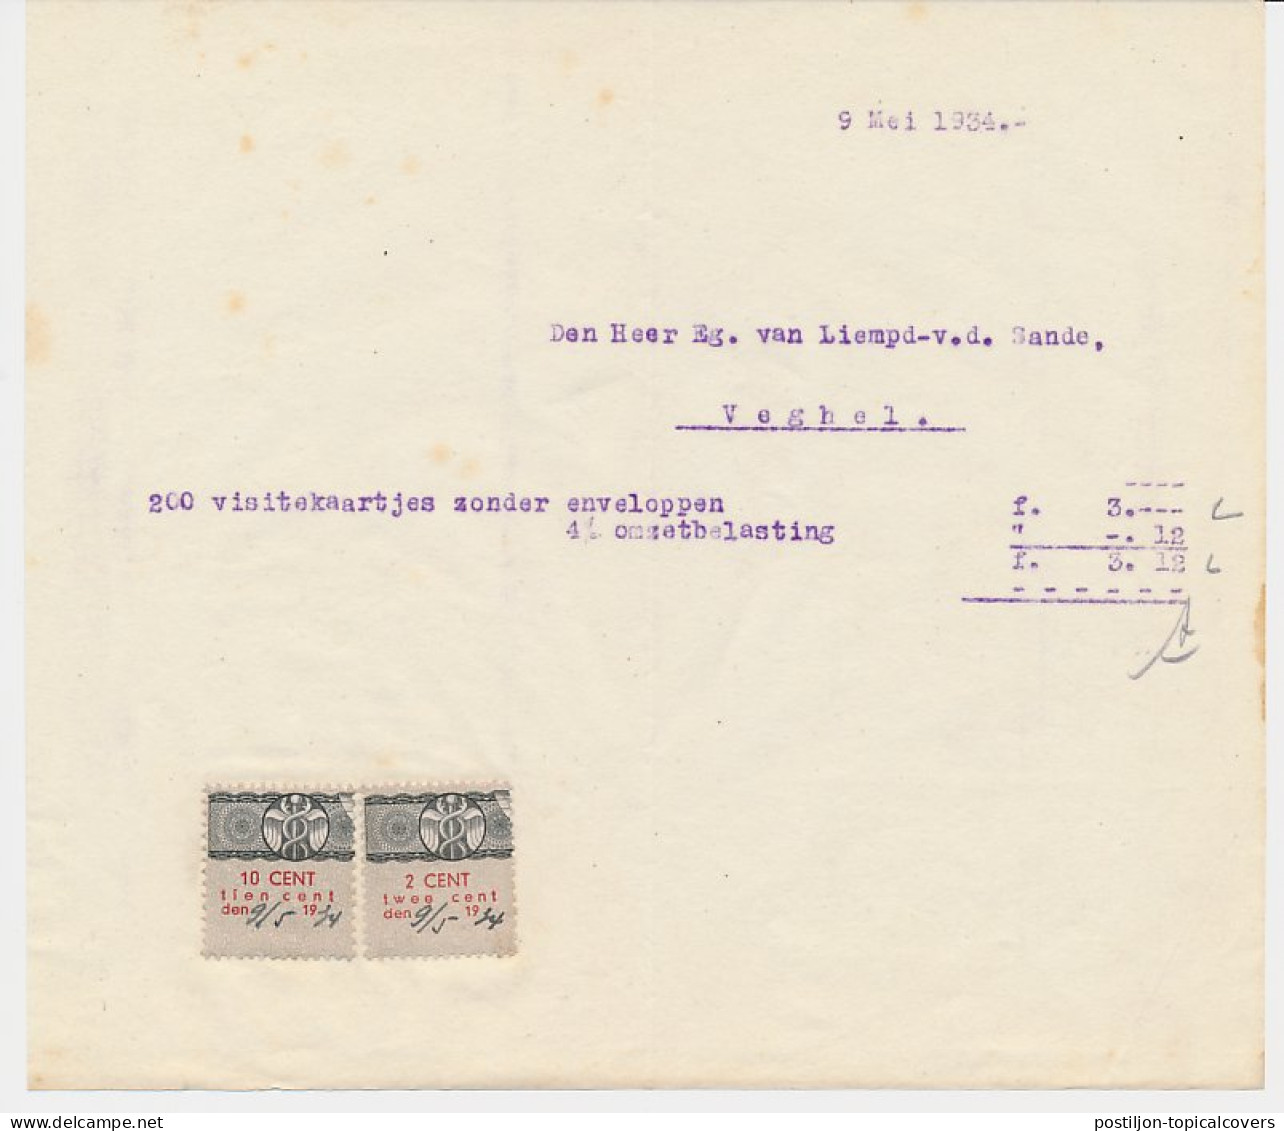 Omzetbelasting 2 / 10 CENT - Veghel 1934 - Steuermarken